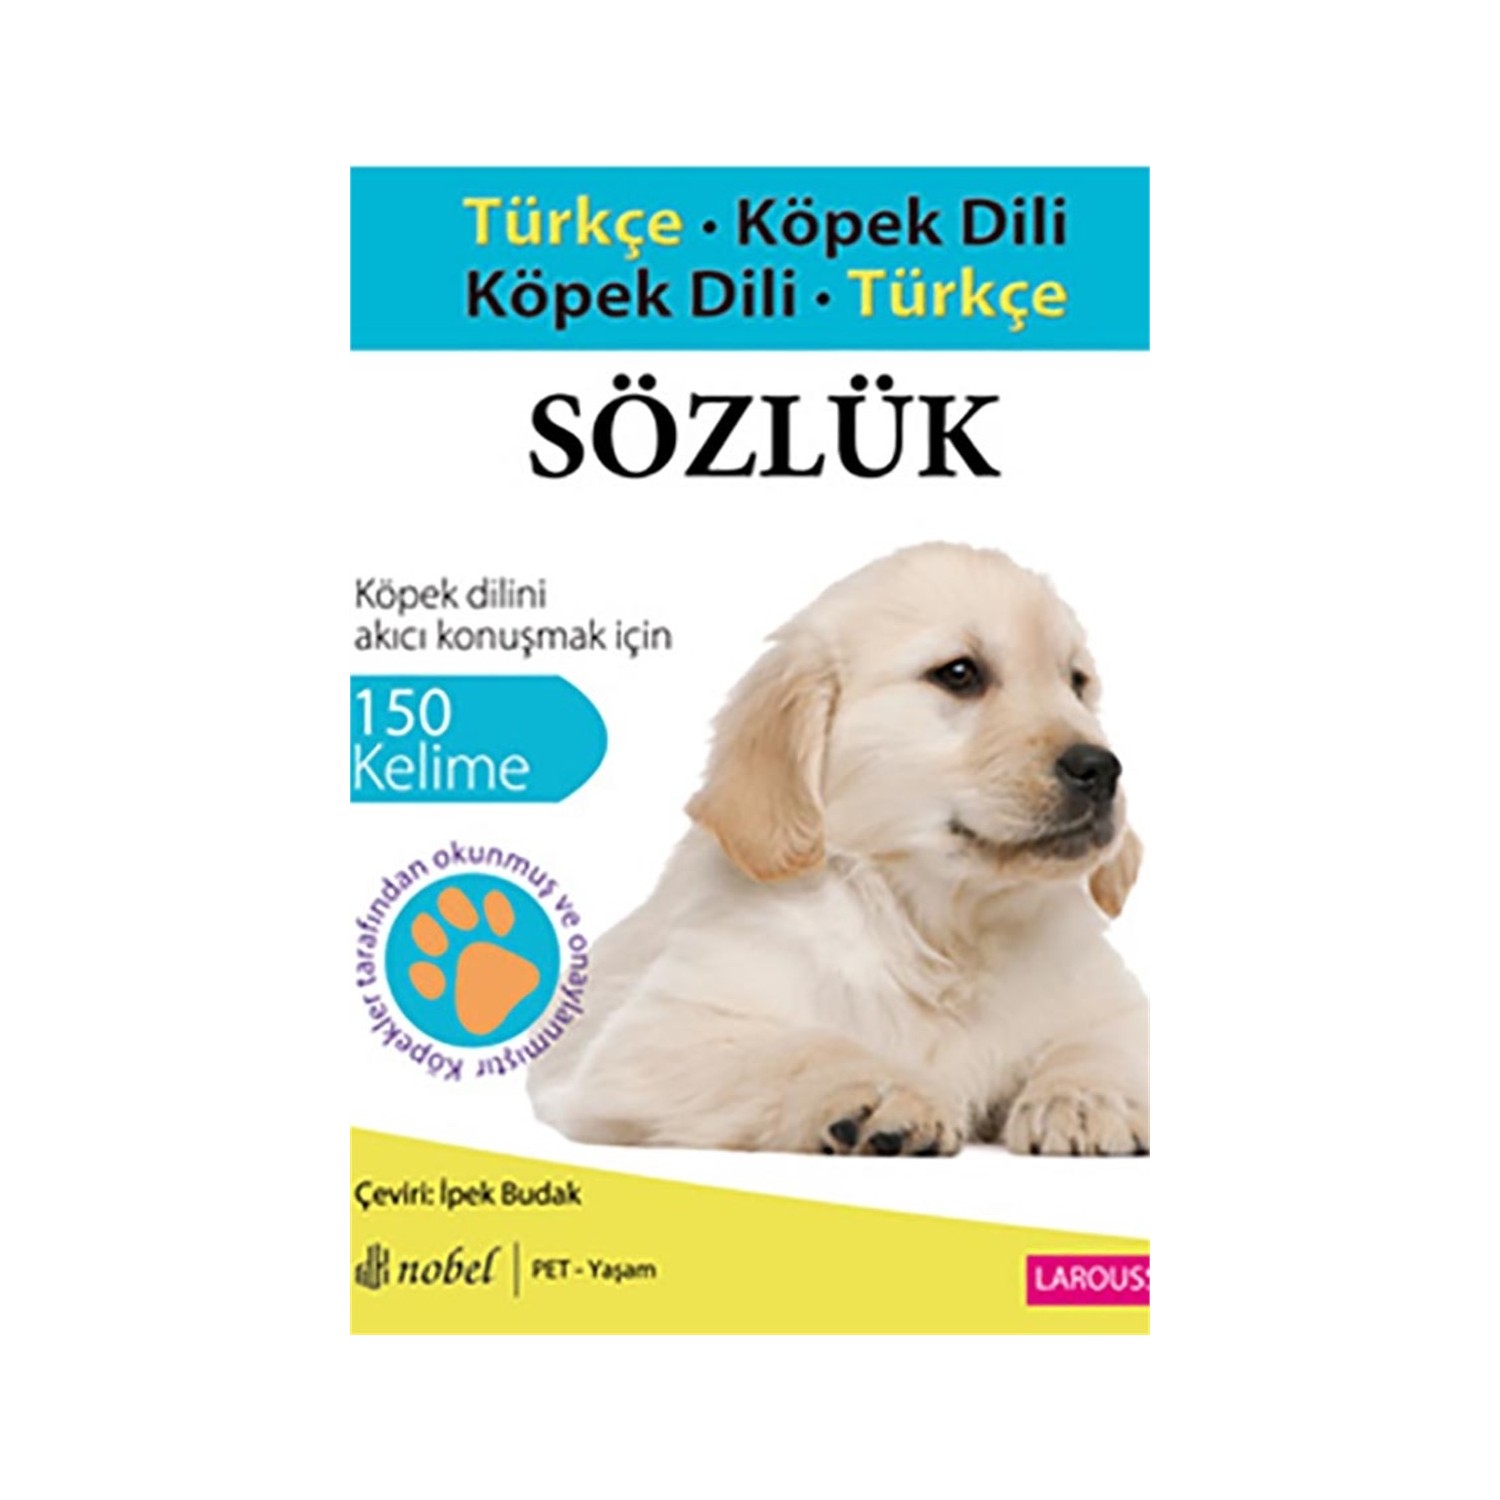 Turkce Kopek Dili Kopek Dili Turkce Sozluk Kitabi Ve Fiyati